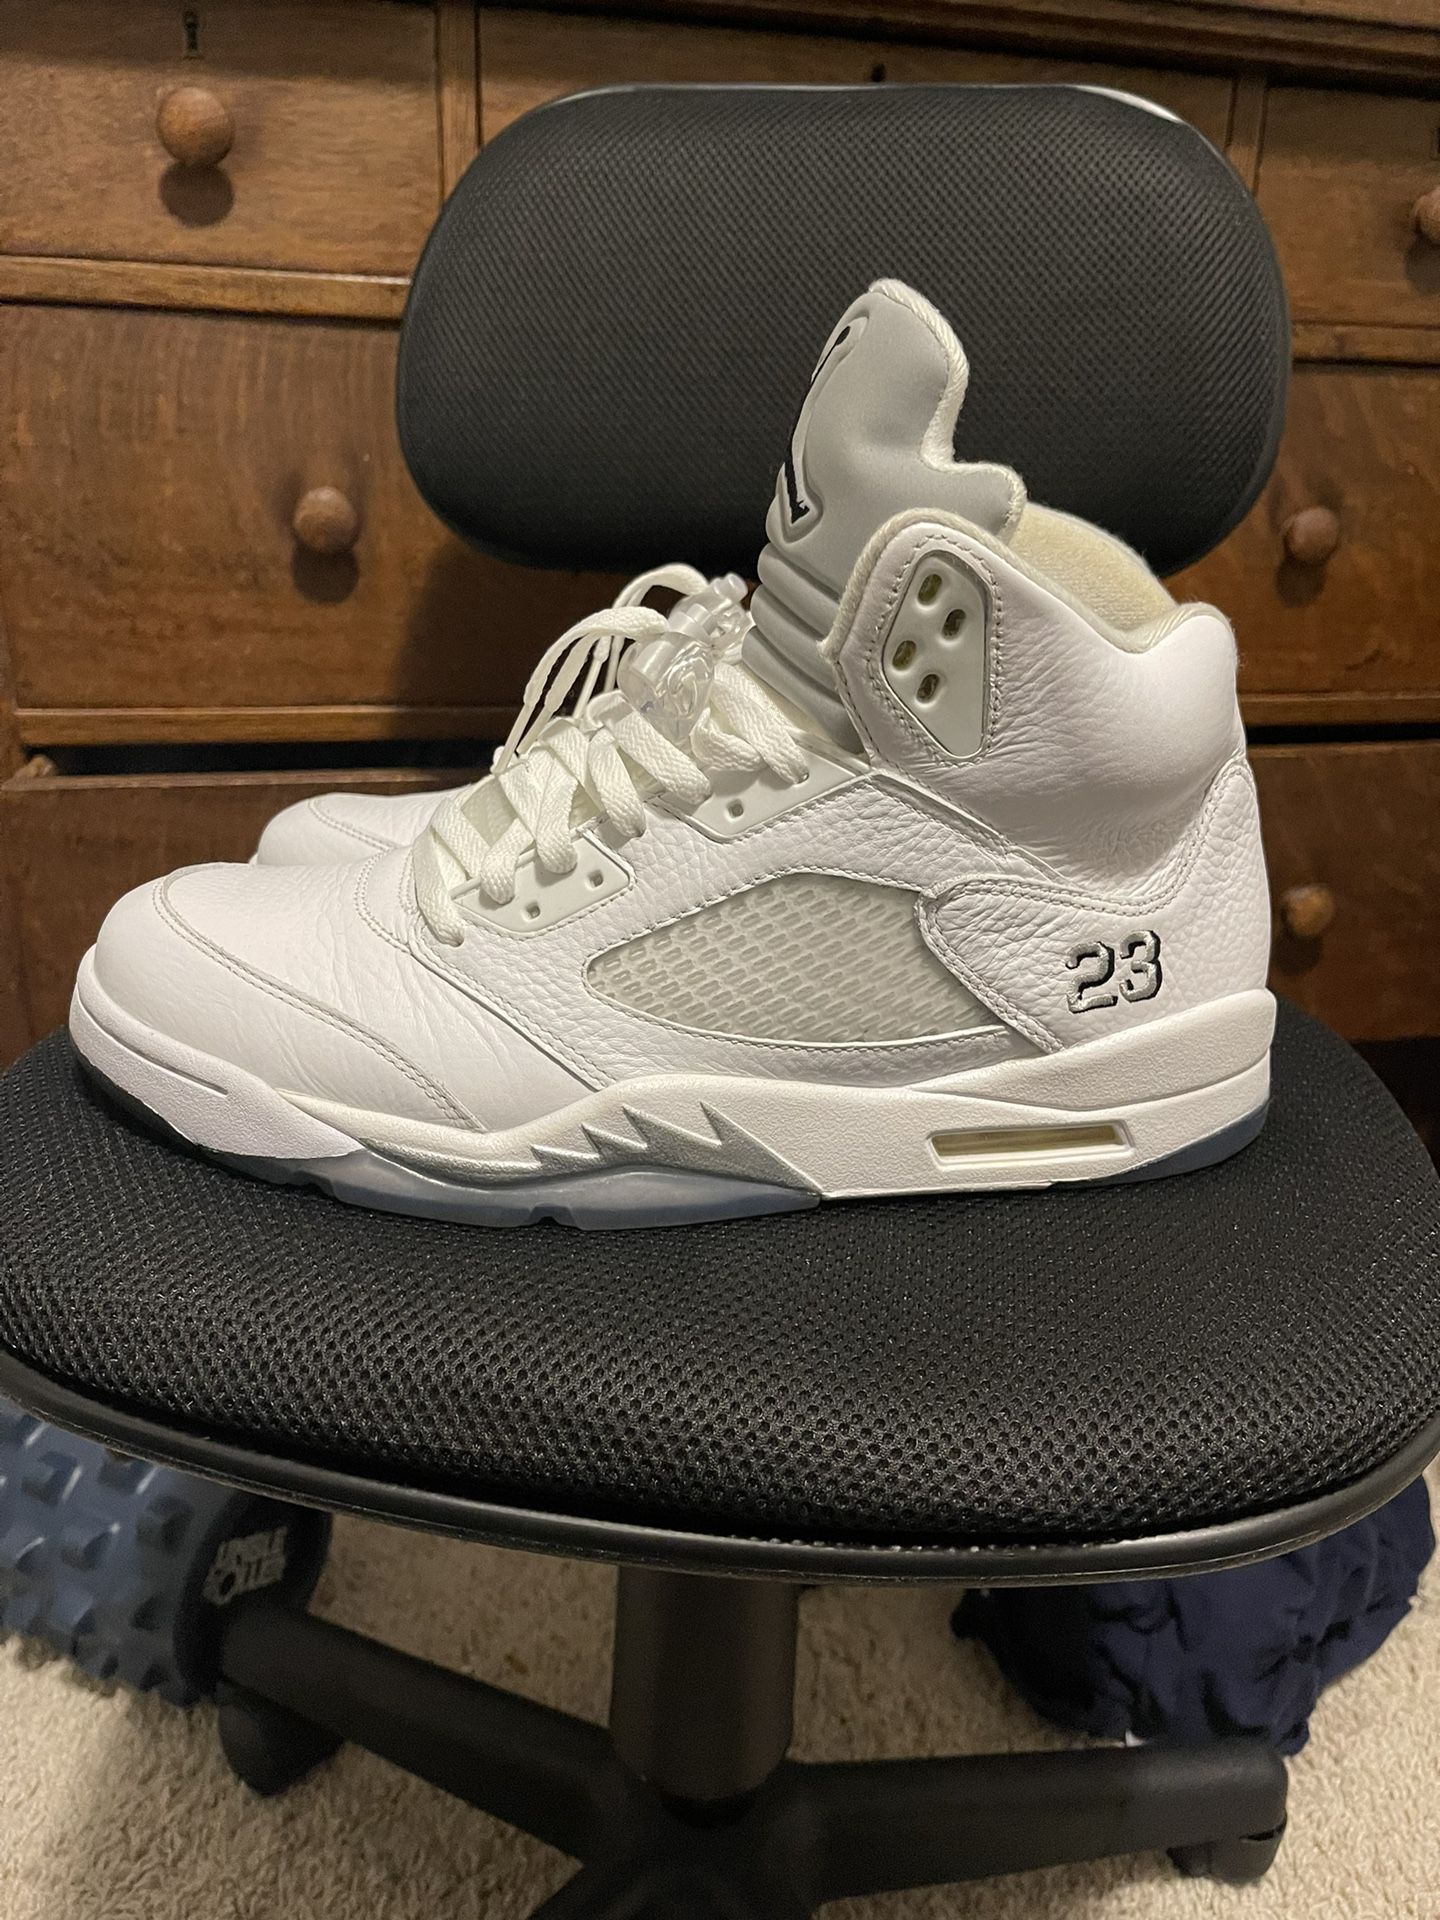 Jordan 5 Retro White Metallic Size 12.5 